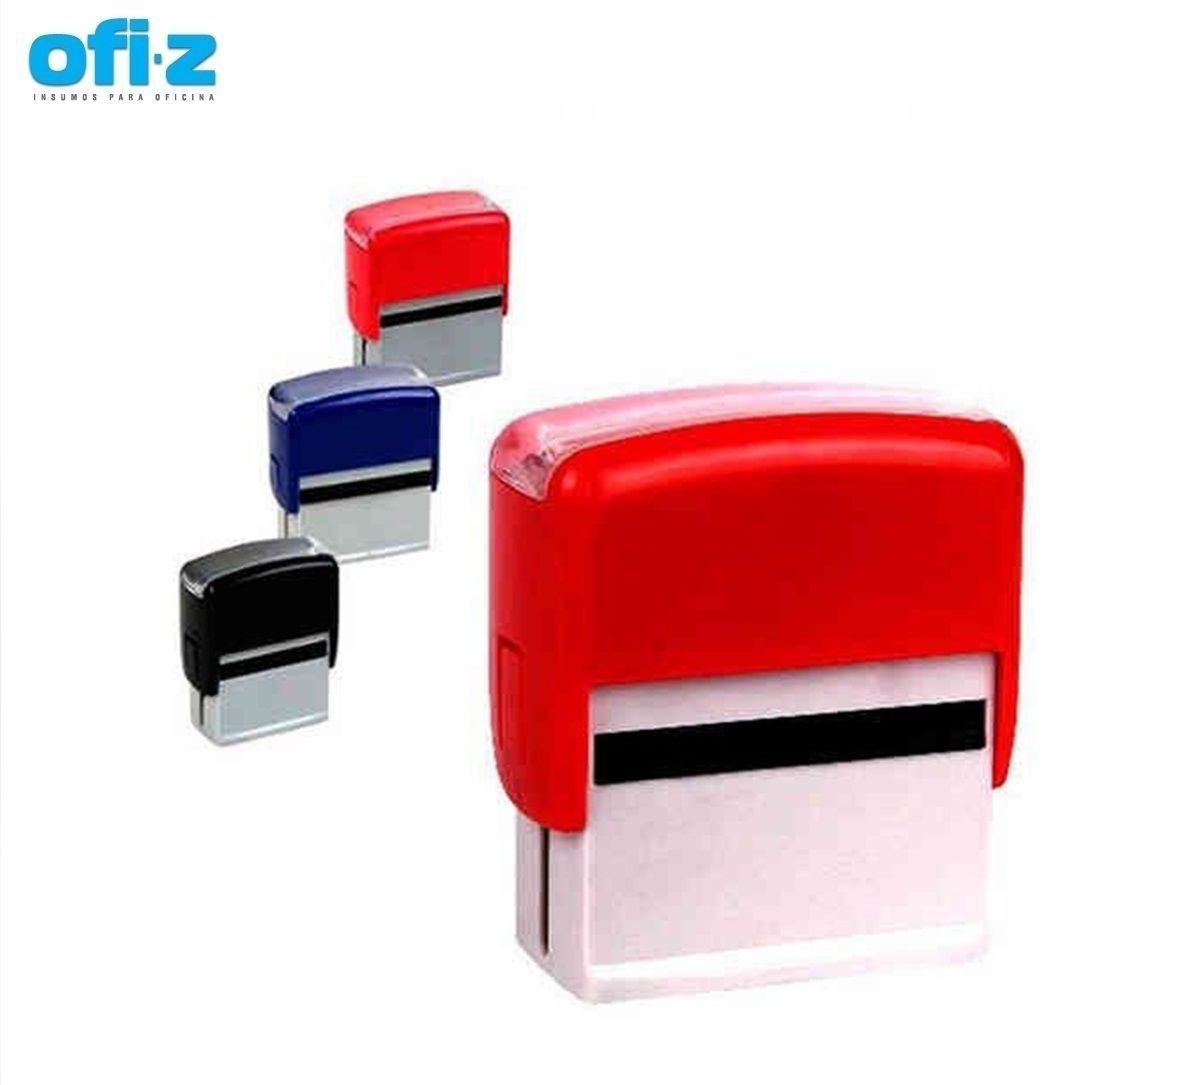 Sellos personalizados - Ofi-Z  Insumos para oficina y empresas